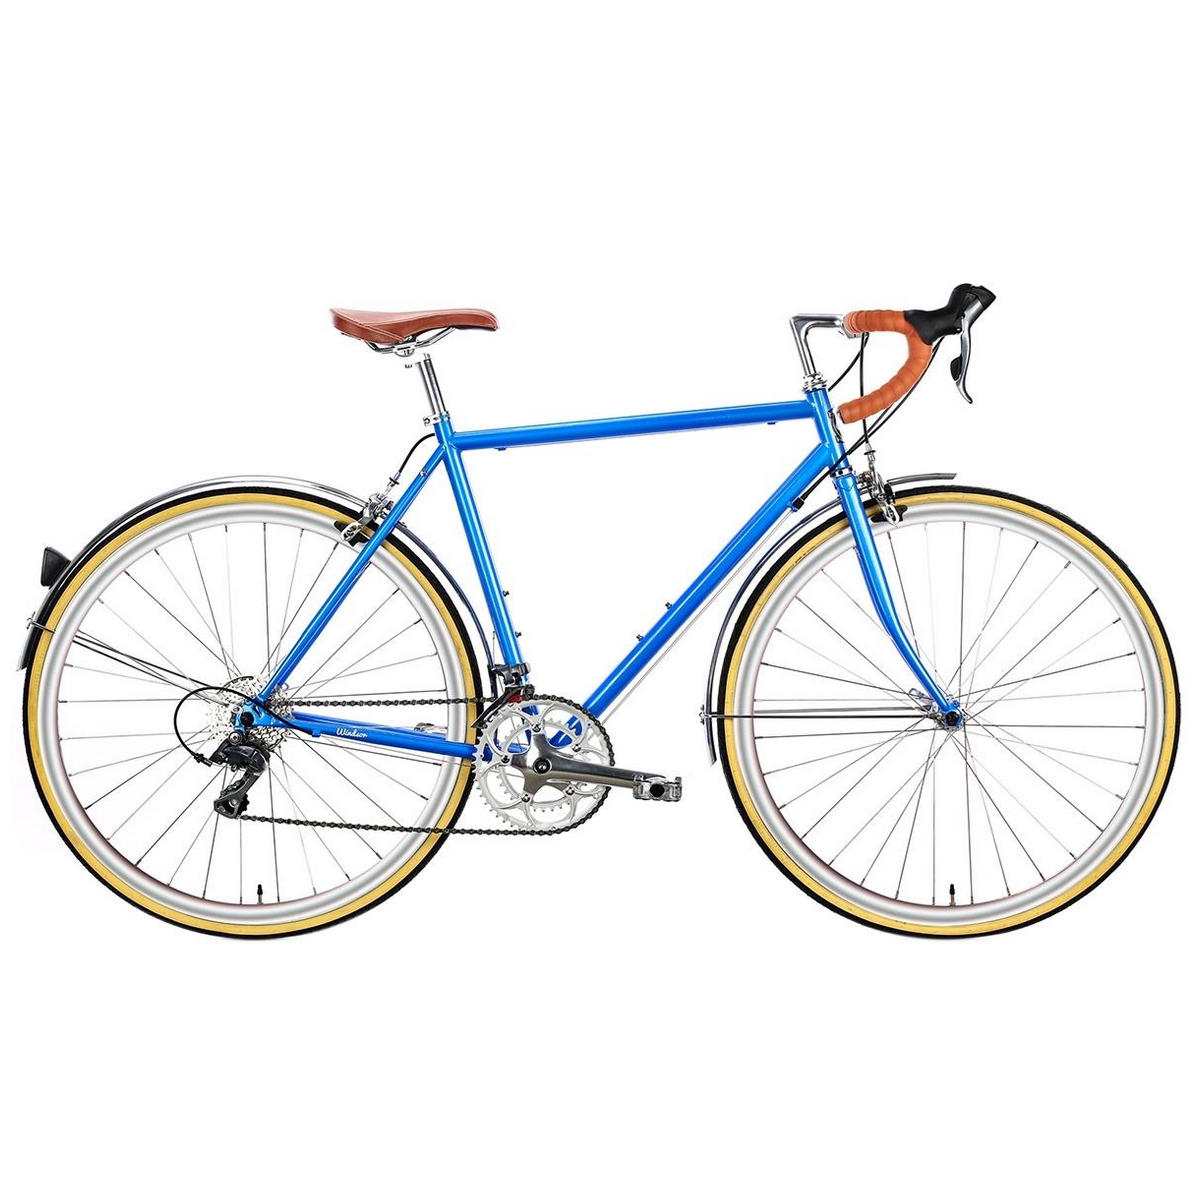 Bicicleta urbana TROY 16spd azul windsor pequena 49cm